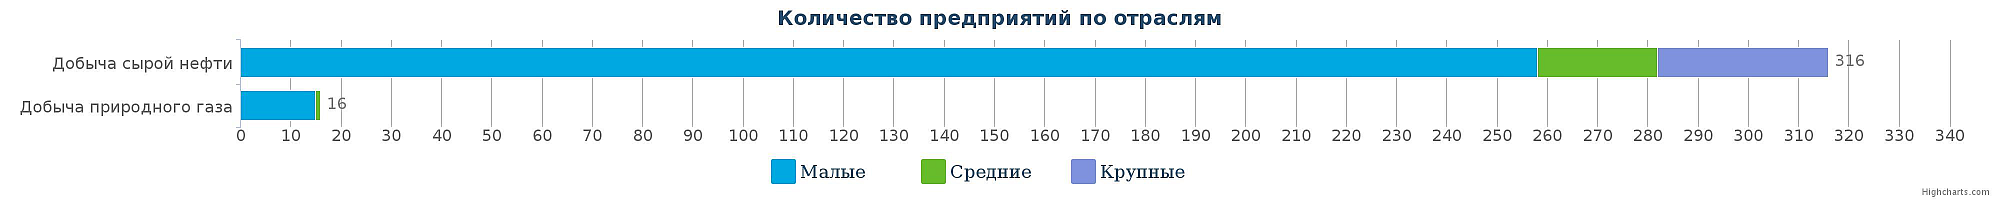 Количество компаний в сфере добычи сырой нефти и природного газа в Казахстане по видам